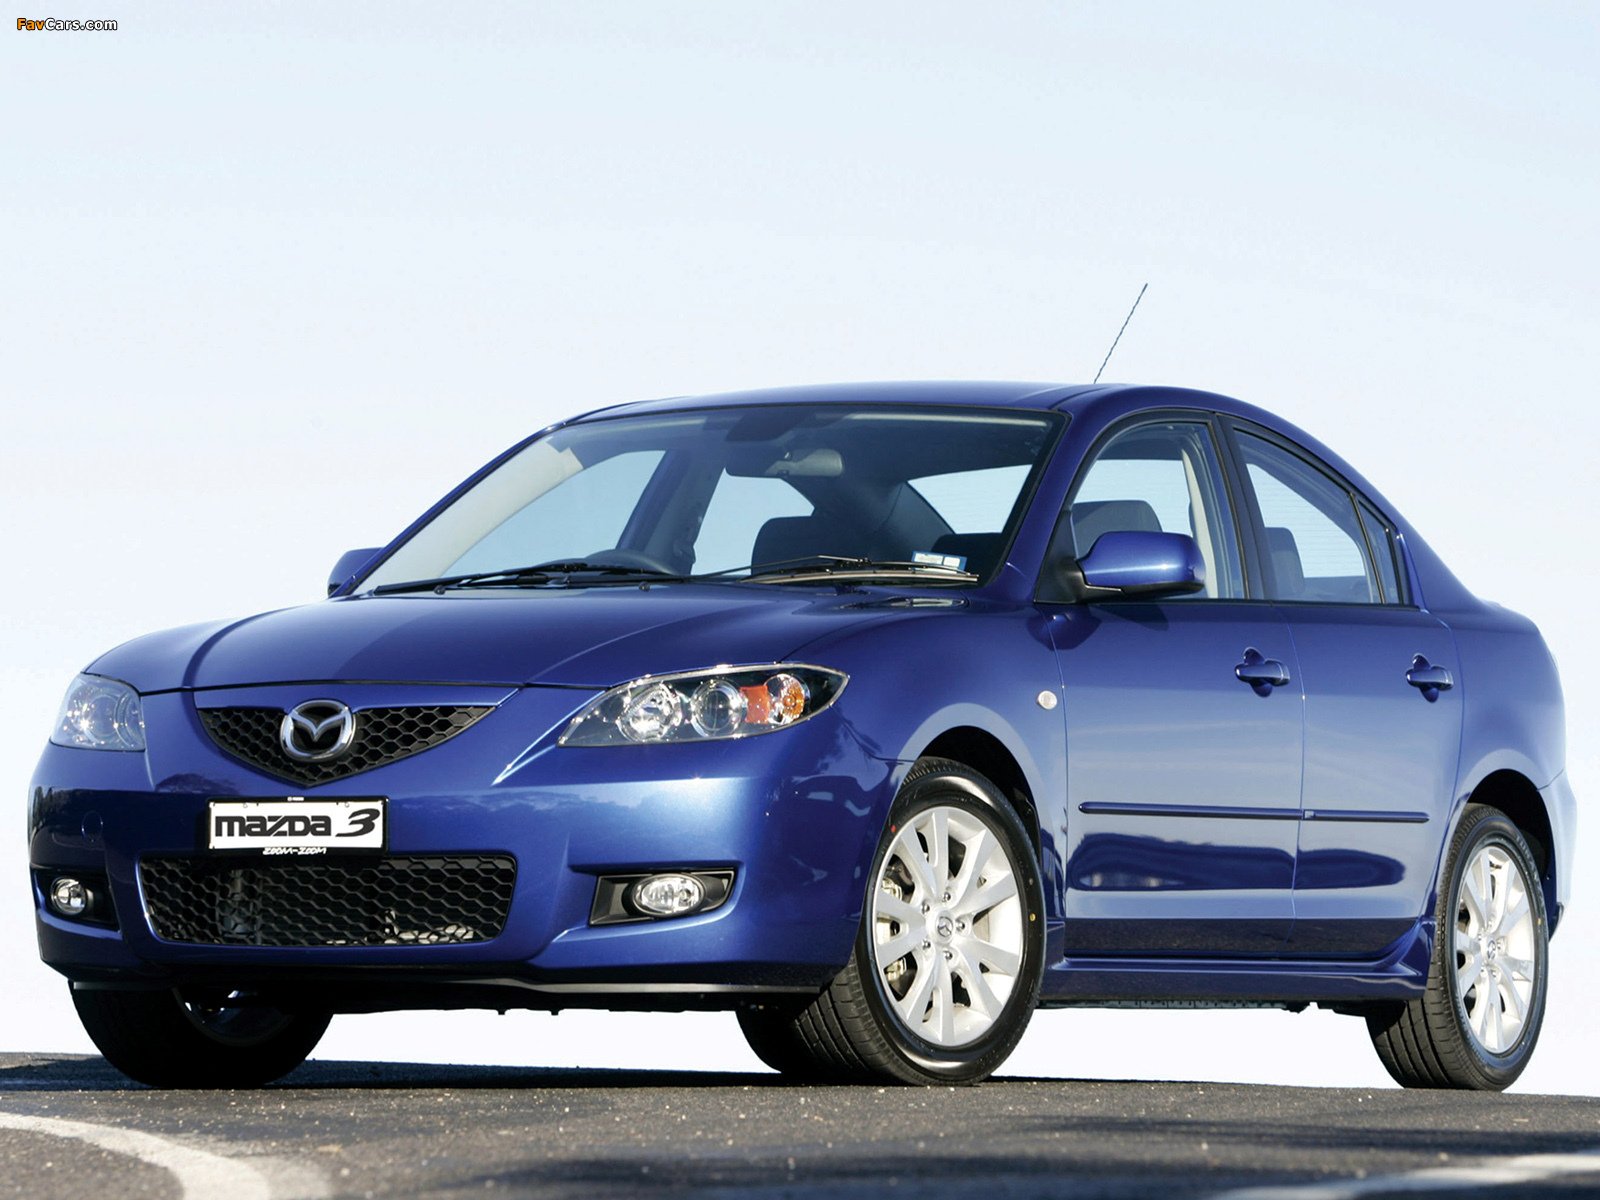 Мазда 3 2006г. Mazda 3 BK 2006. Мазда 3 BK седан. Мазда 3 2006 BK седан. Mazda 3 BK 2003.